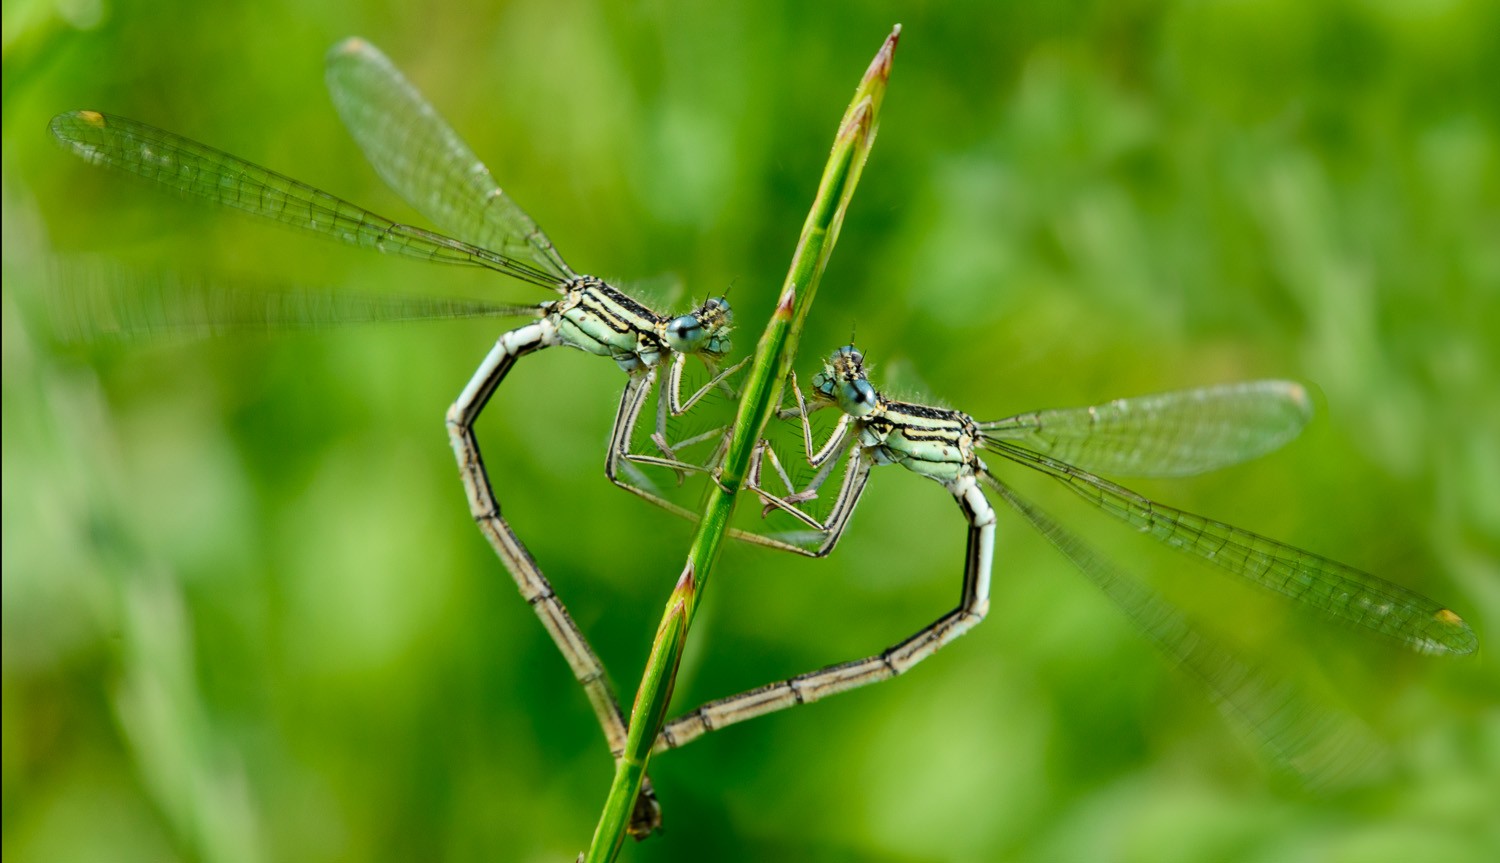 sim, insetos têm emoção! (Foto: Mark Seton / flickr/ creative commons)